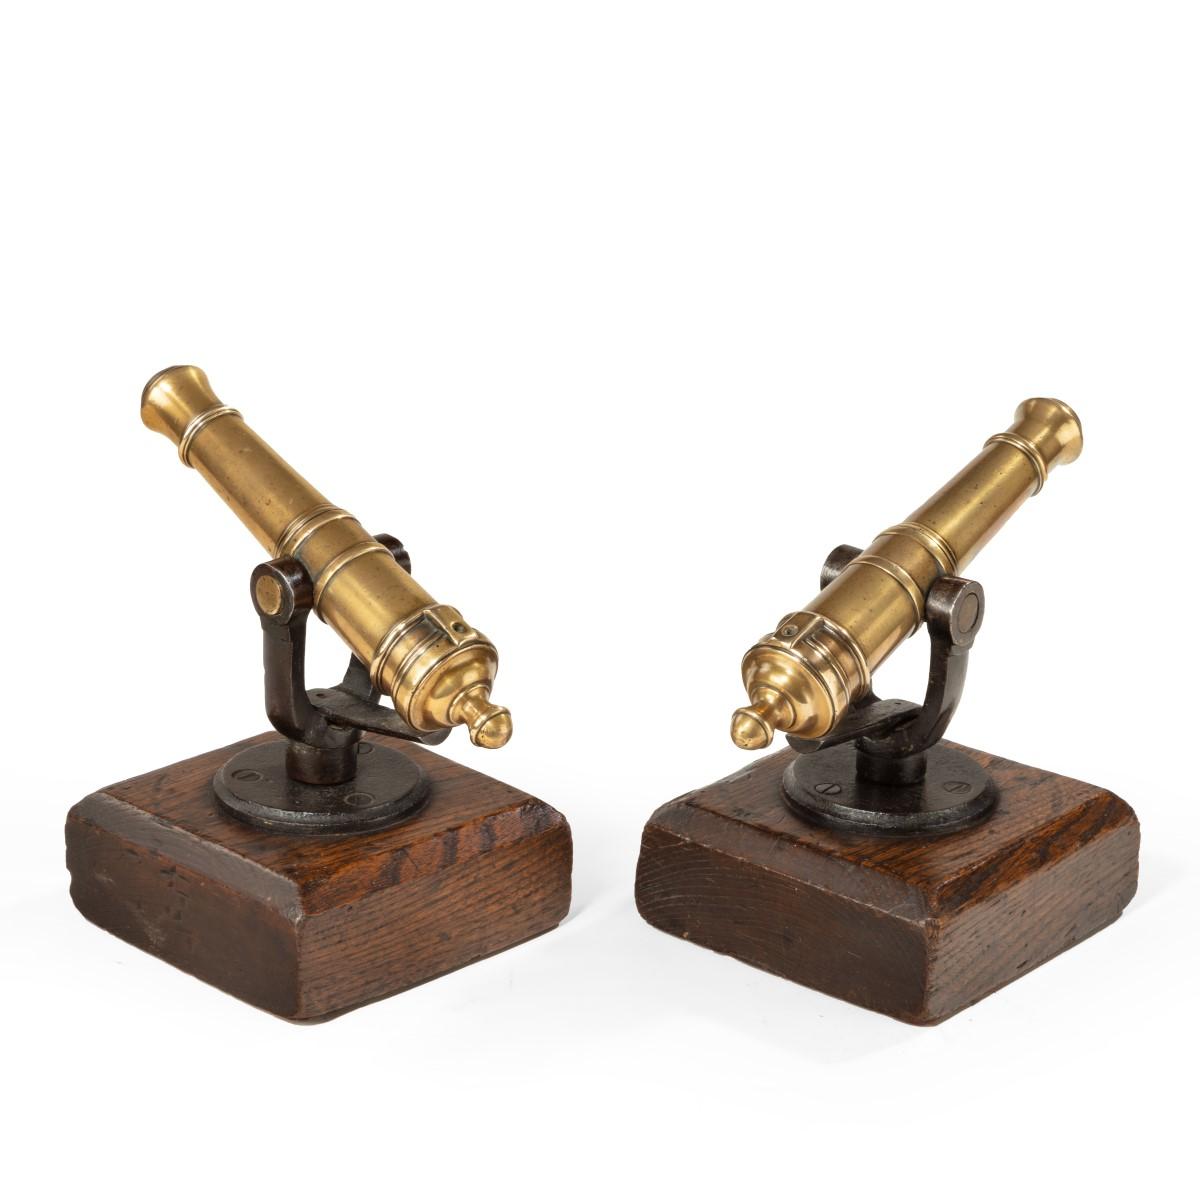 A pair of 19th century ½inch bore signal guns